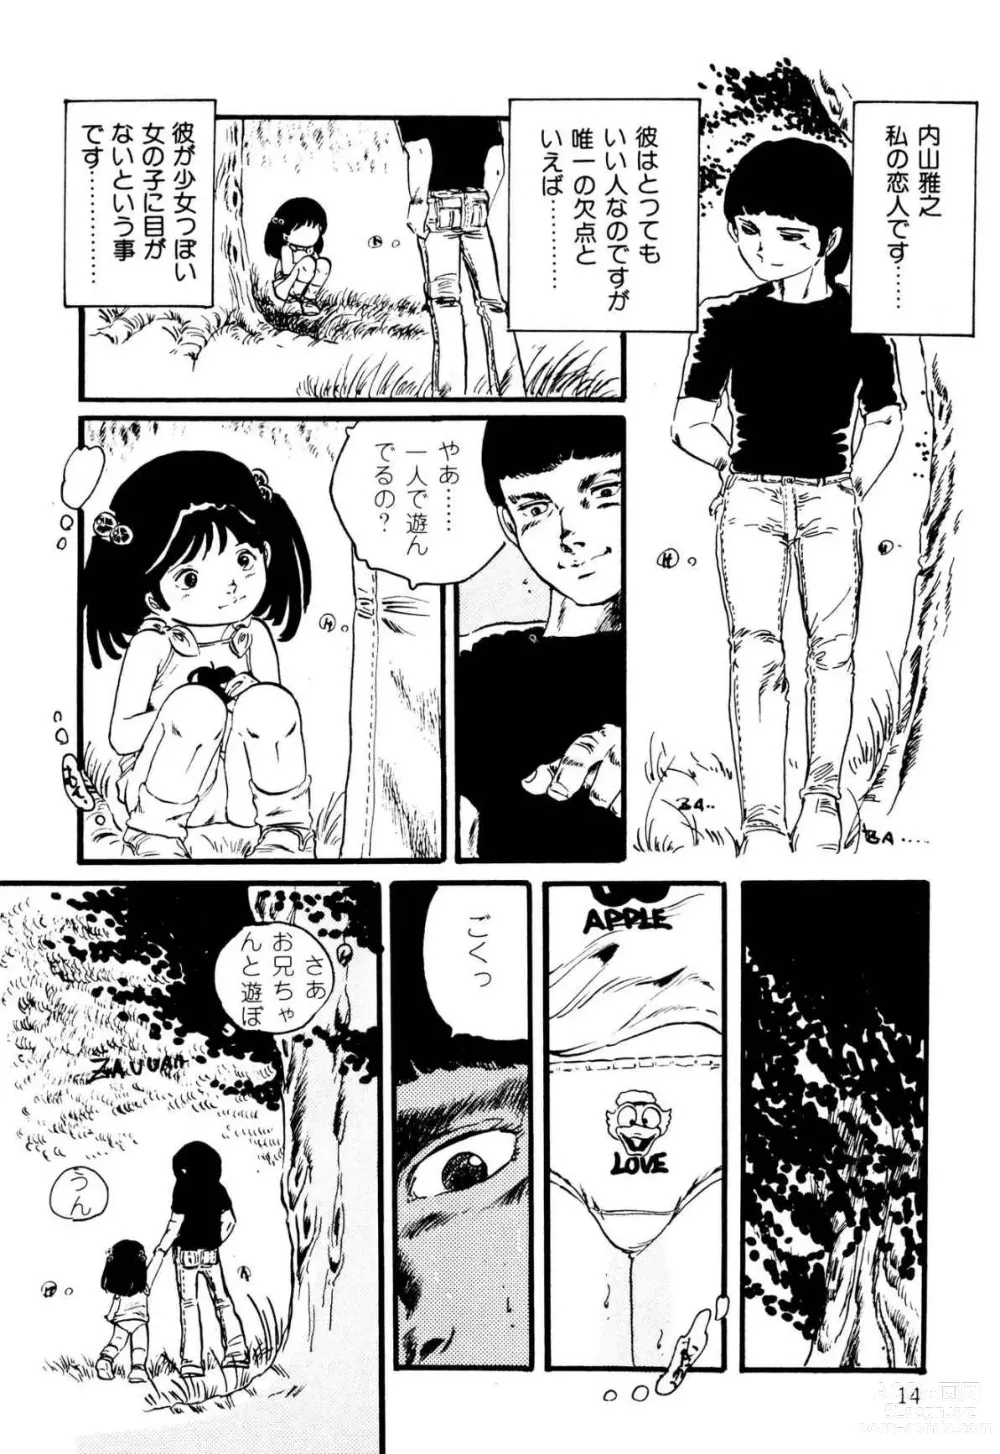 Page 14 of manga Koisuru Yousei